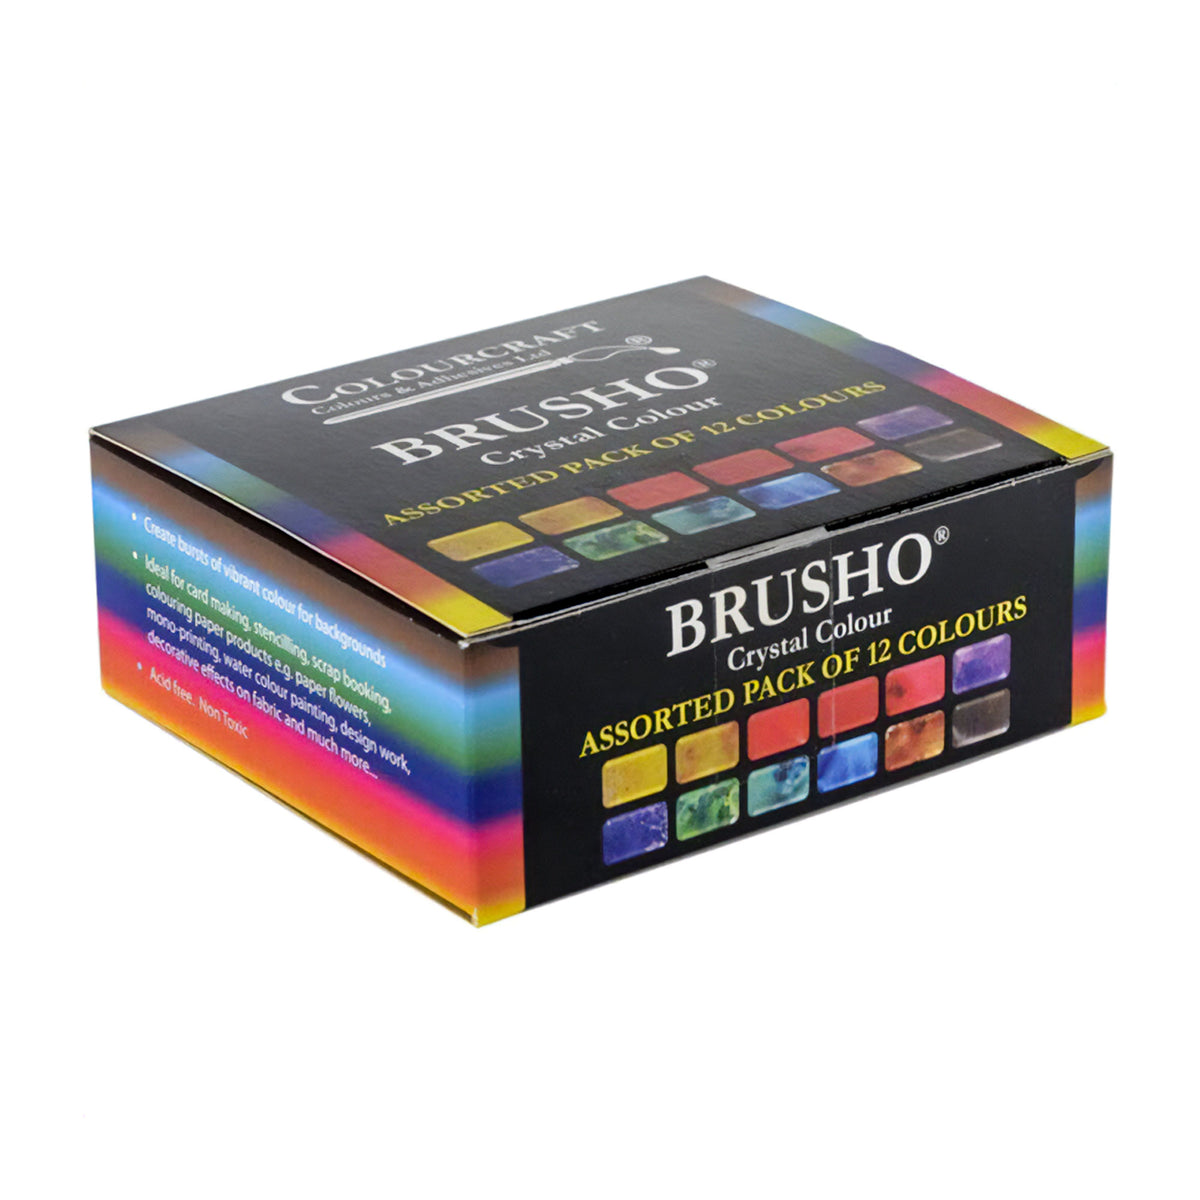 Brusho 15g Starter Pack - Fixed Assortment 12 Colours Box